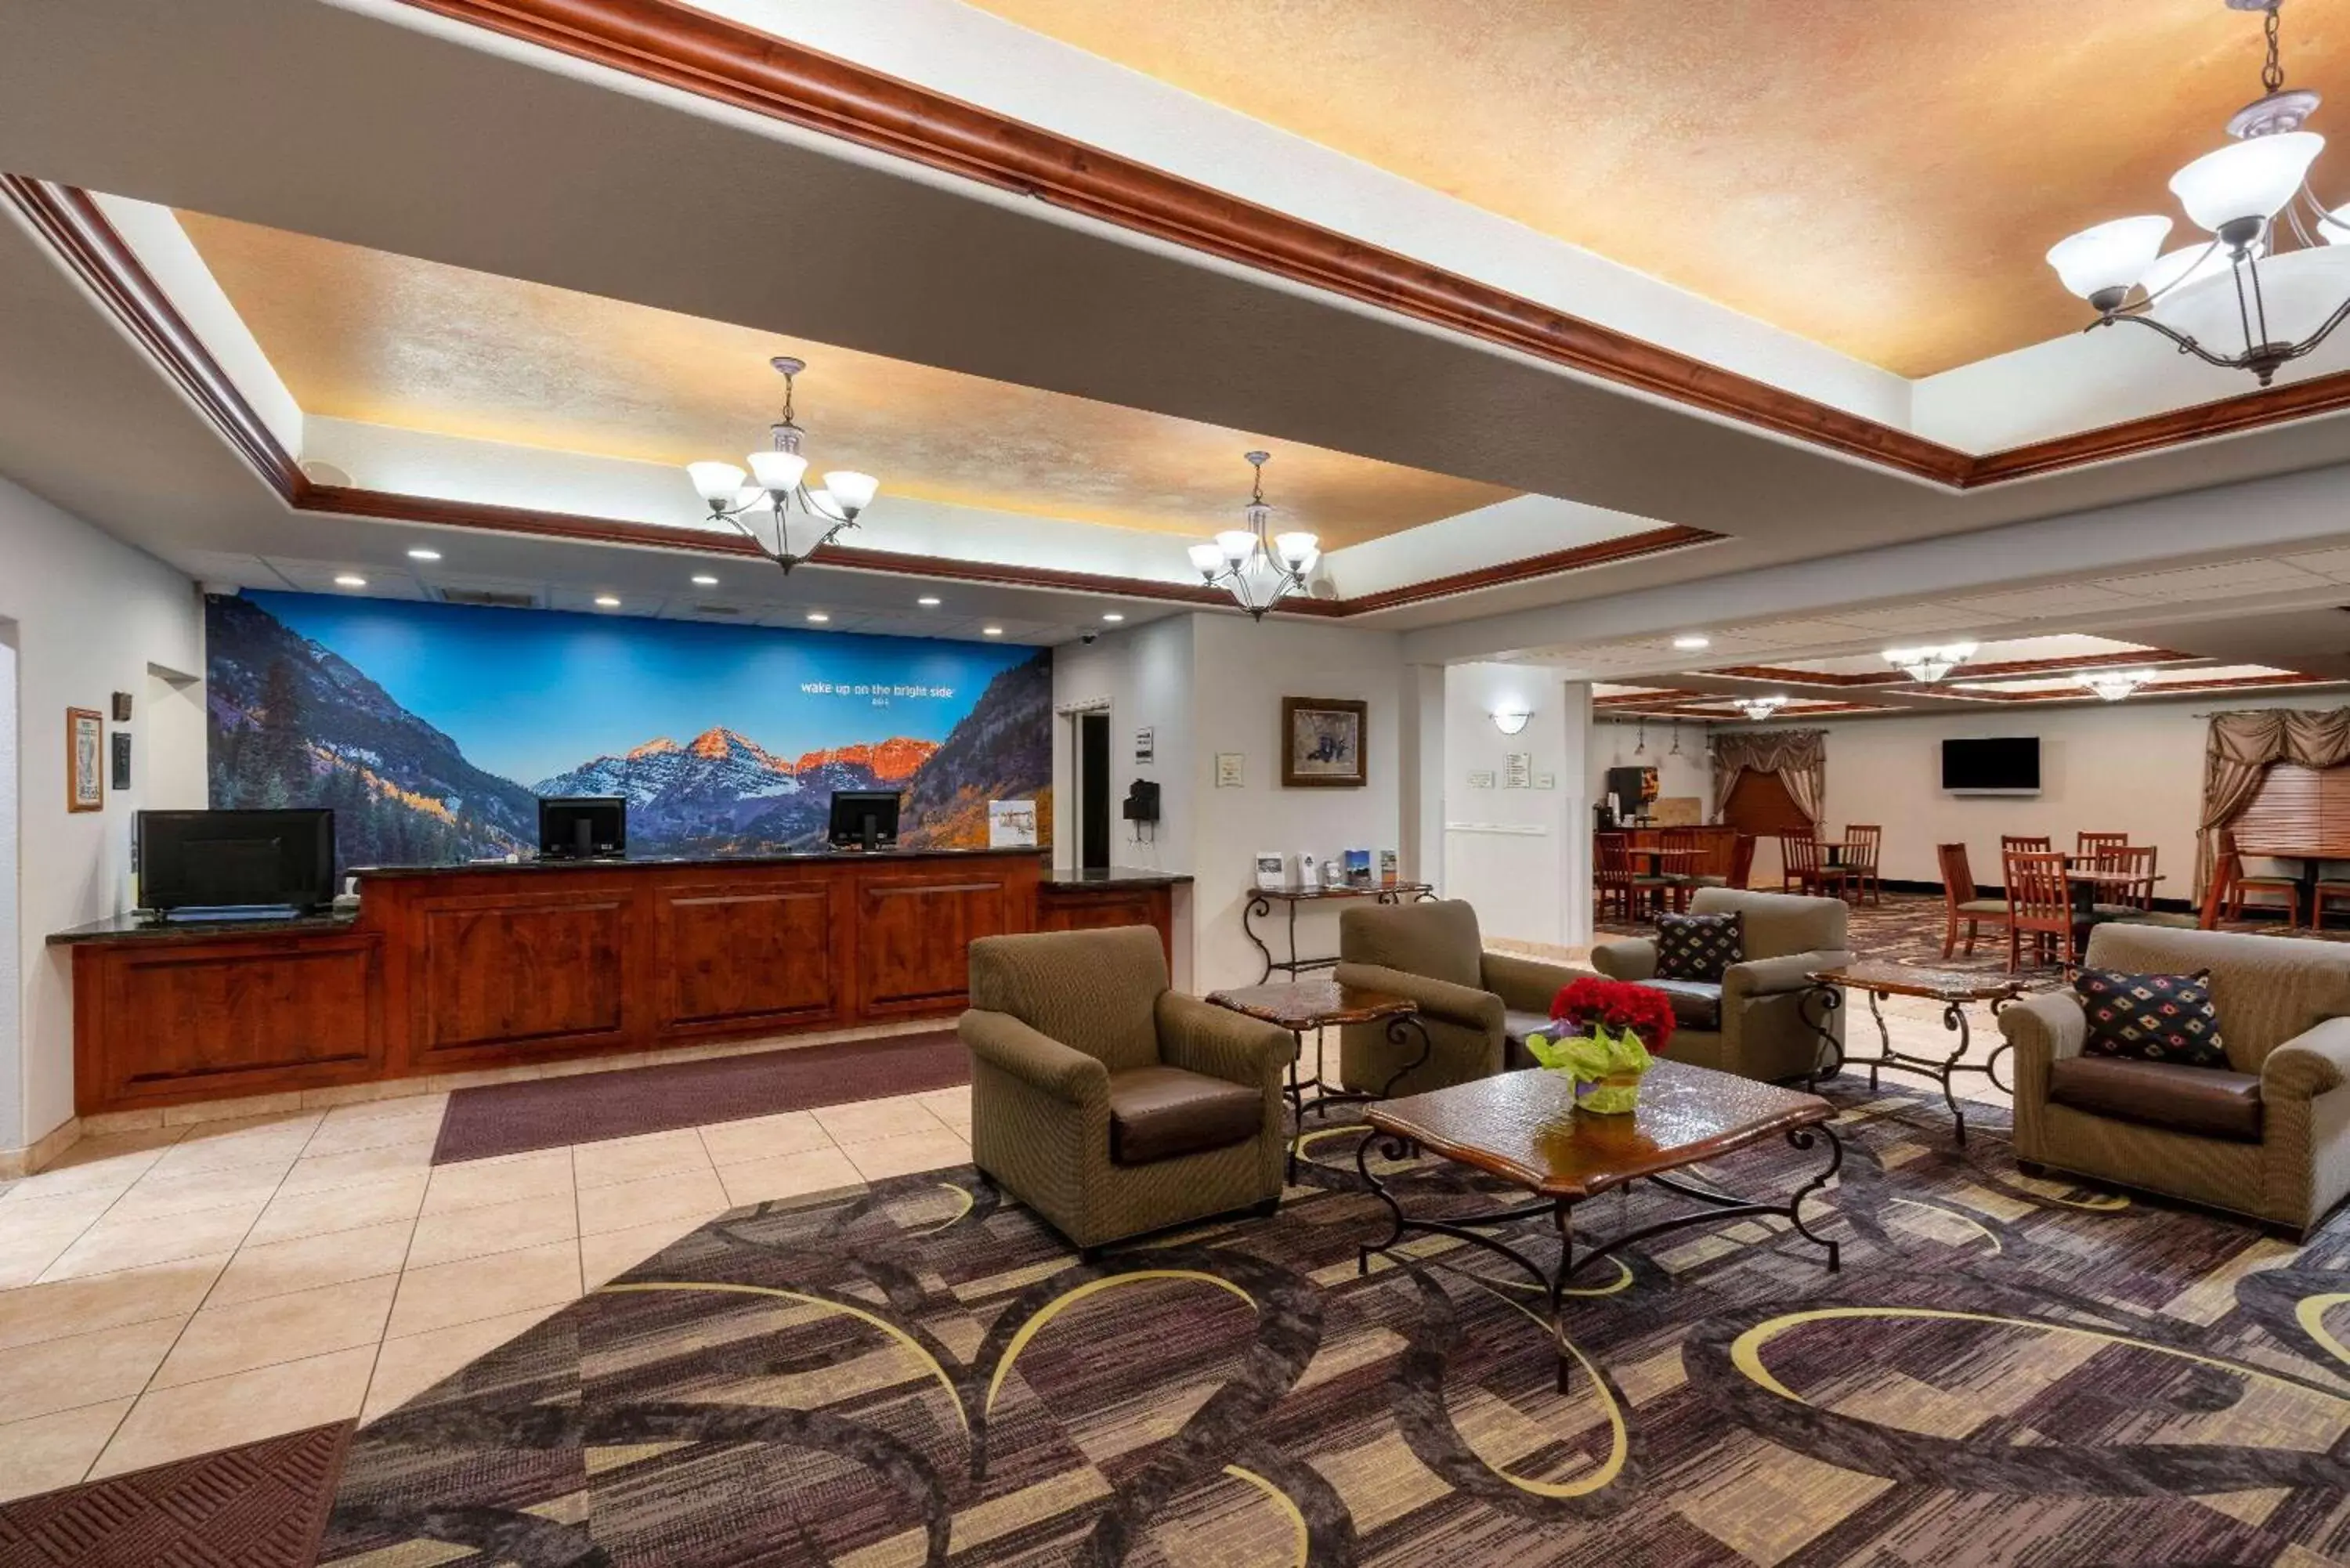 Lobby or reception, Lobby/Reception in La Quinta by Wyndham Rifle